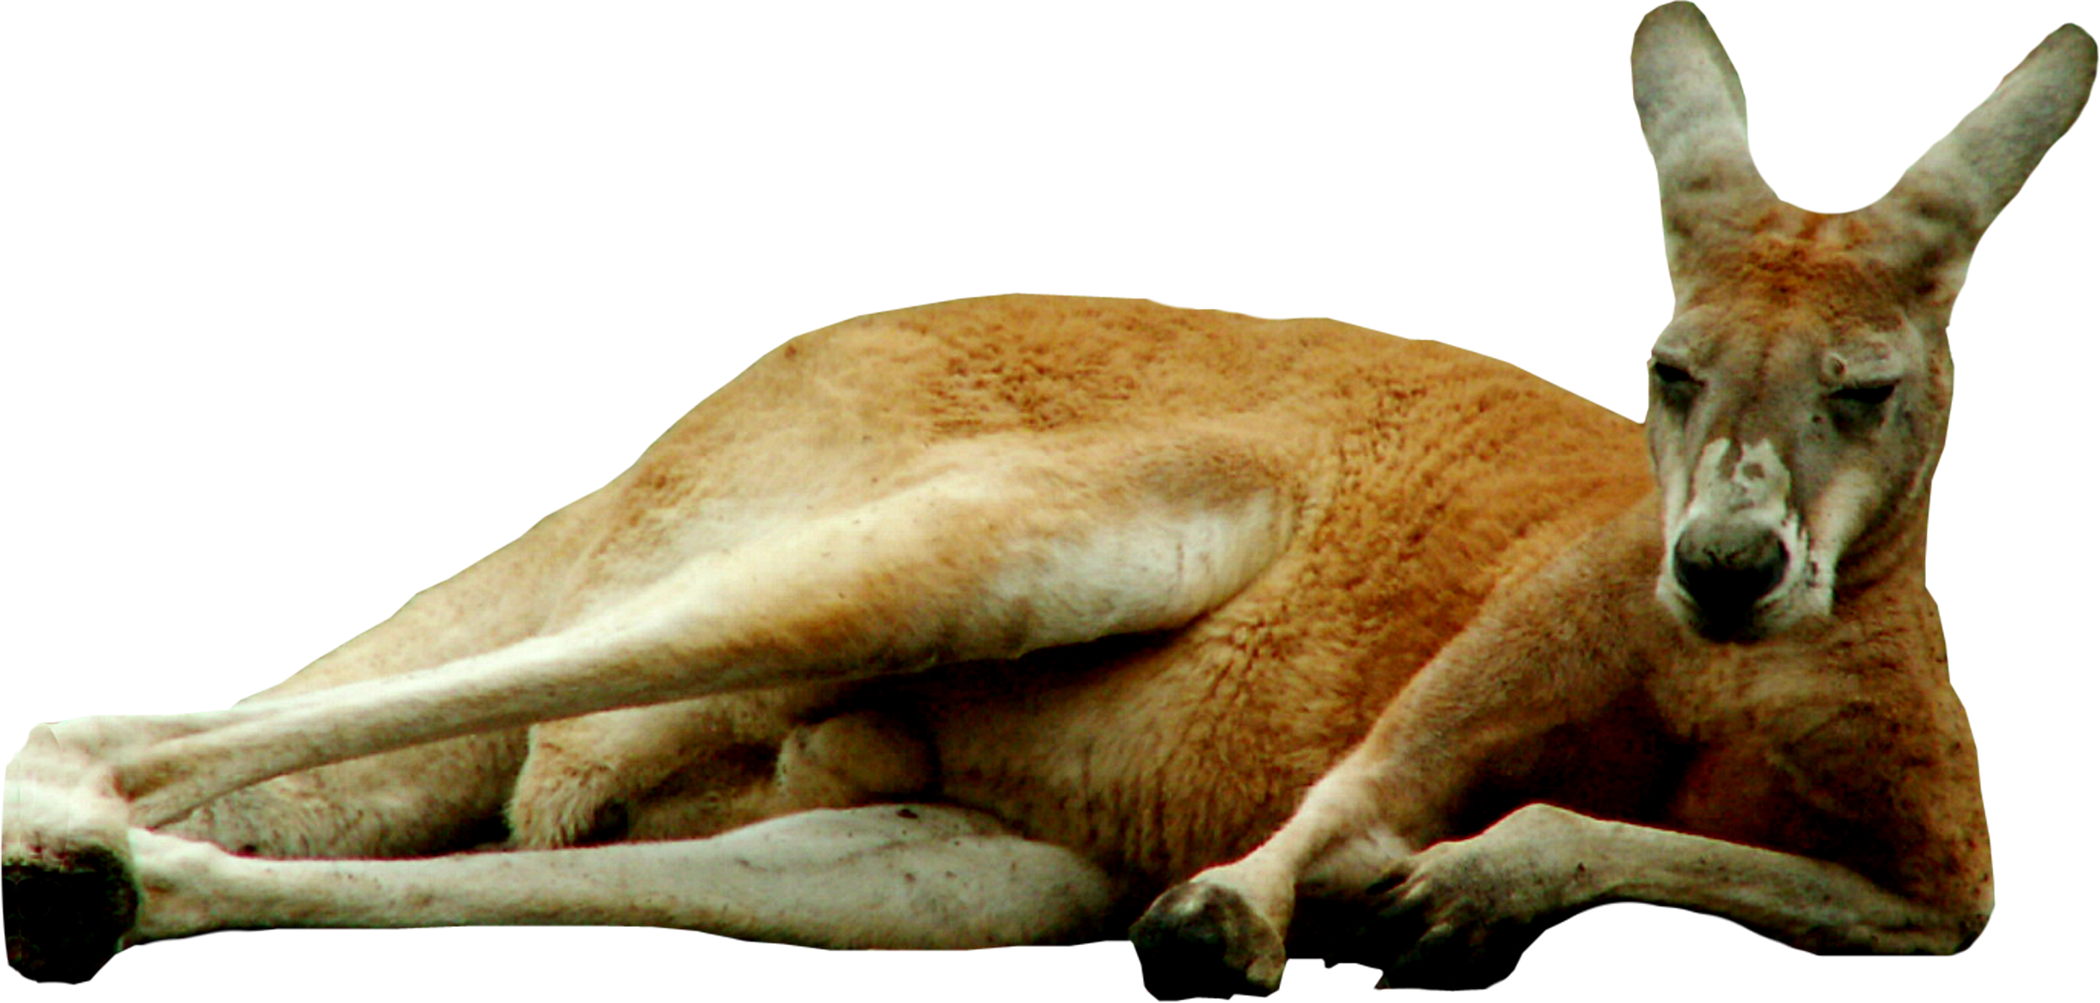 A Kangaroo Lying On The Ground